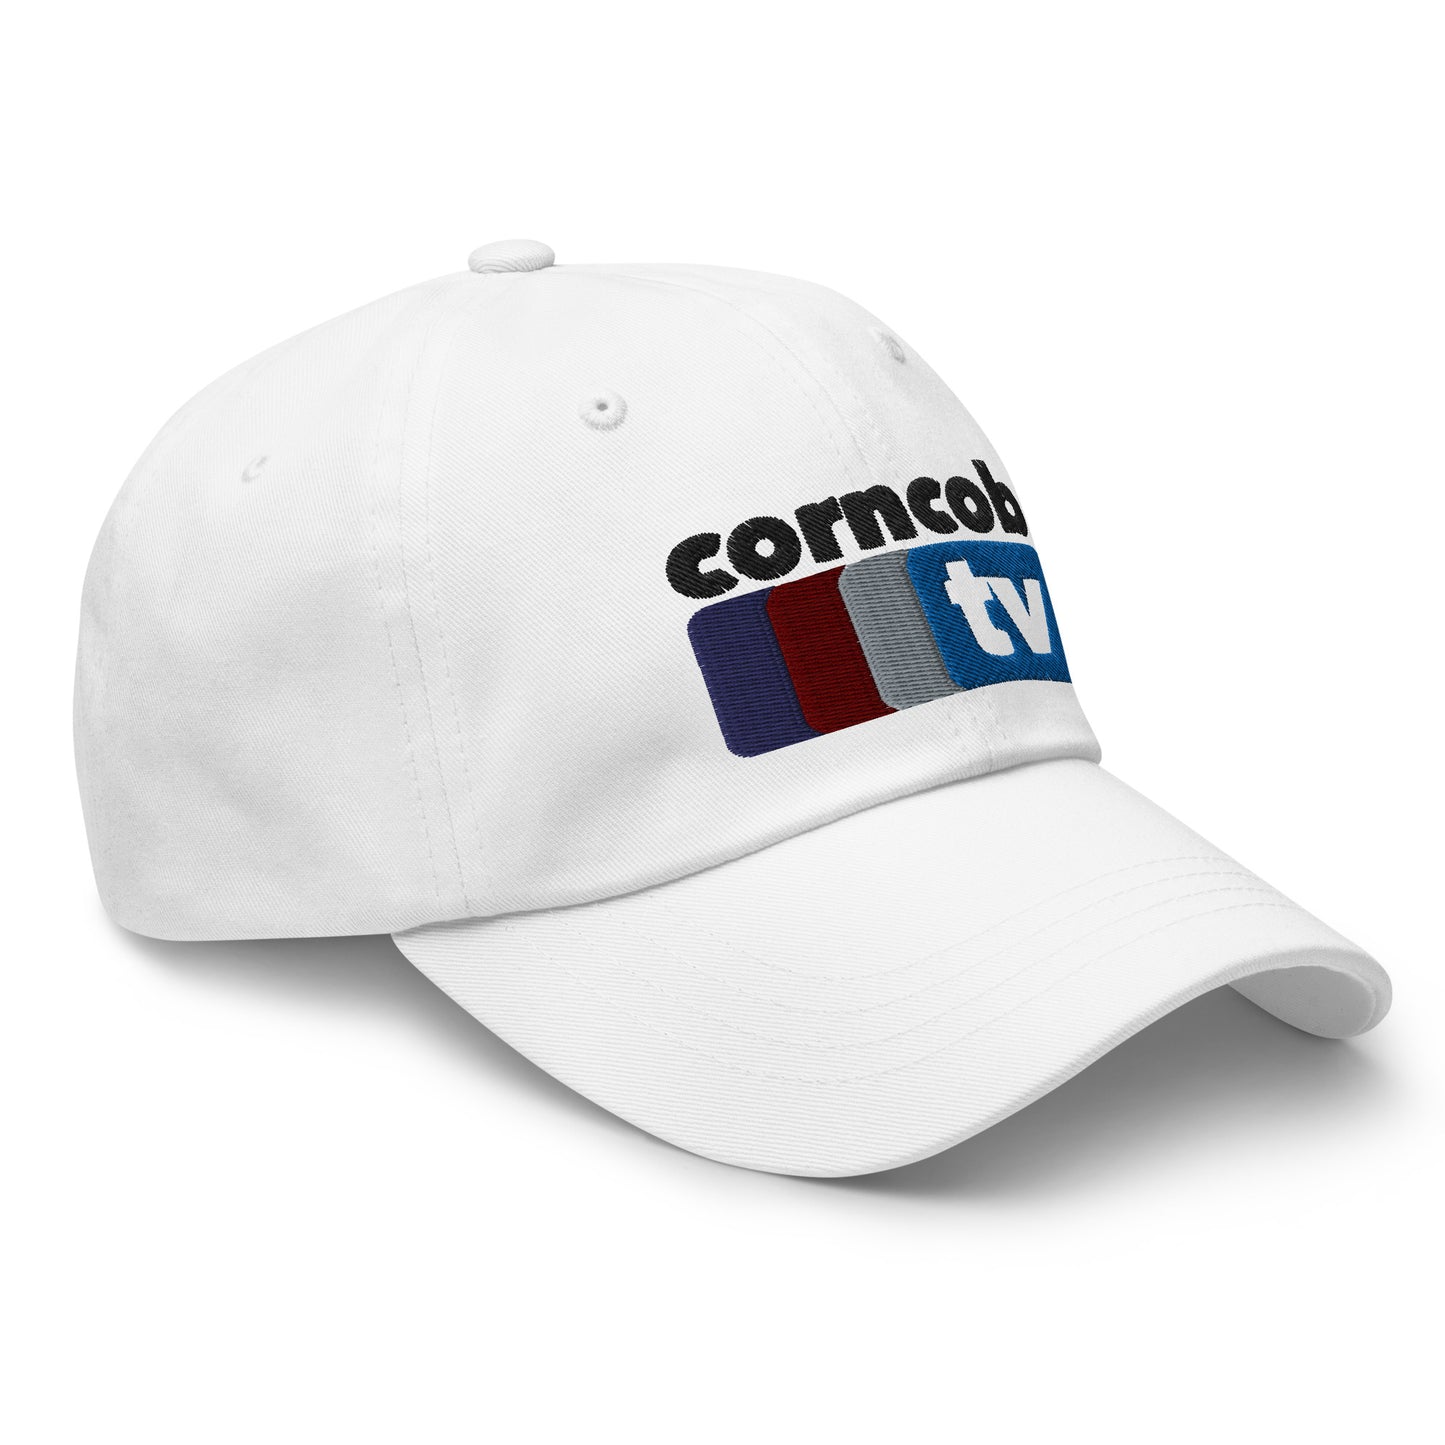 Corncob TV Dad hat